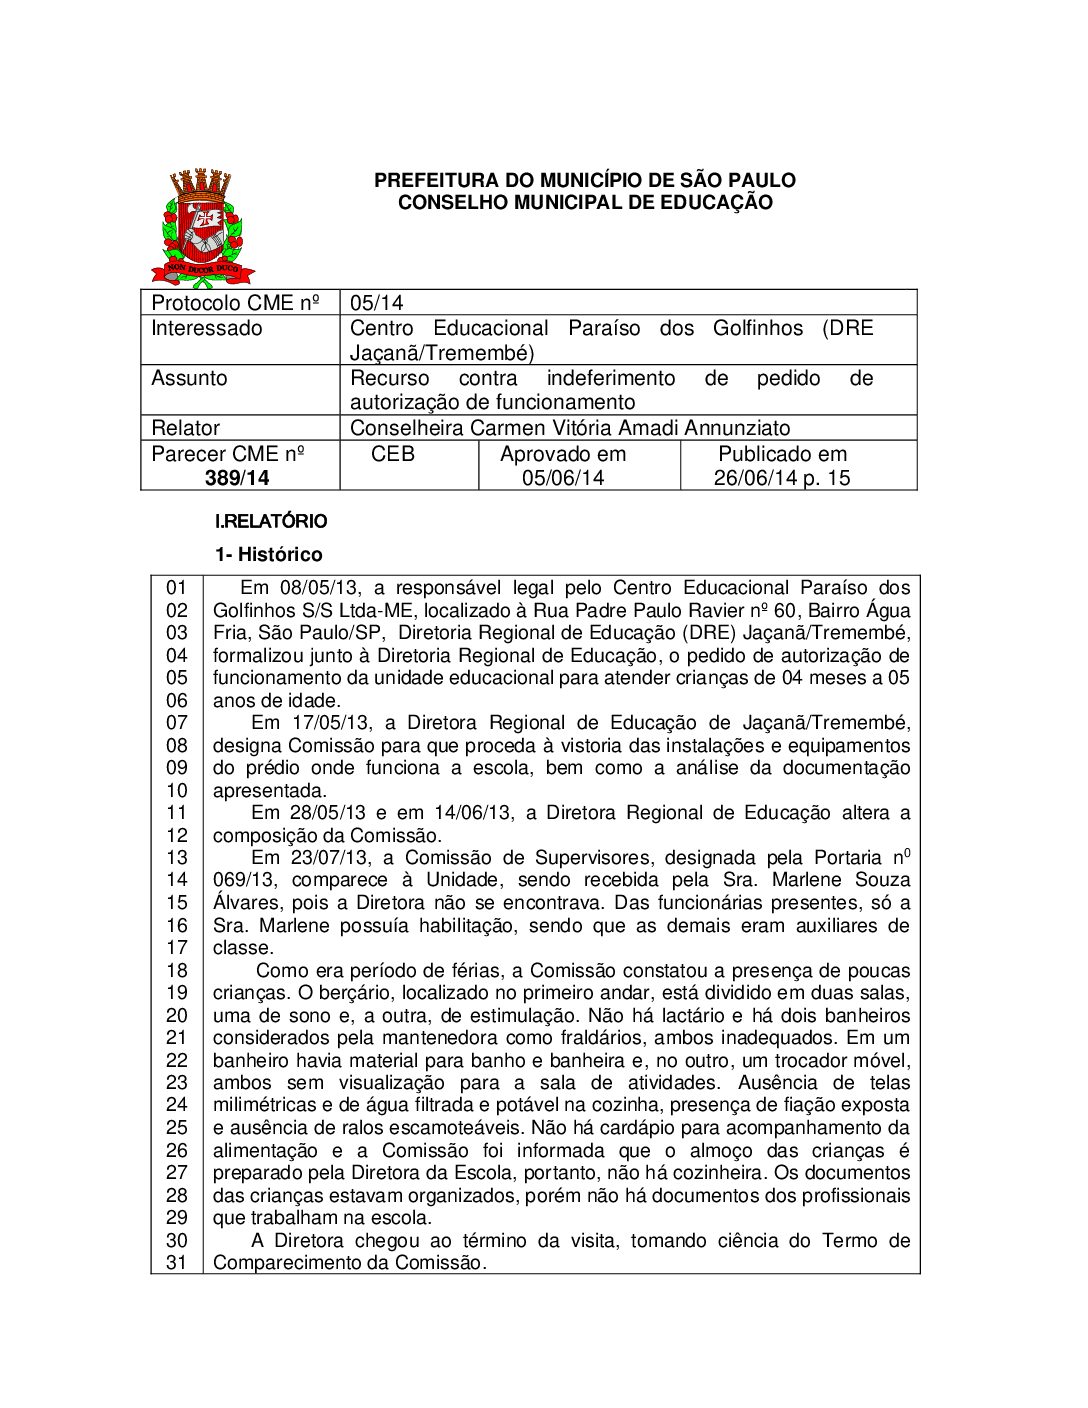 Parecer CME nº 389/2014 - Centro Educacional Paraíso dos Golfinhos (DRE Jaçanã/Tremembé) - Recurso contra indeferimento de pedido de autorização de funcionamento 